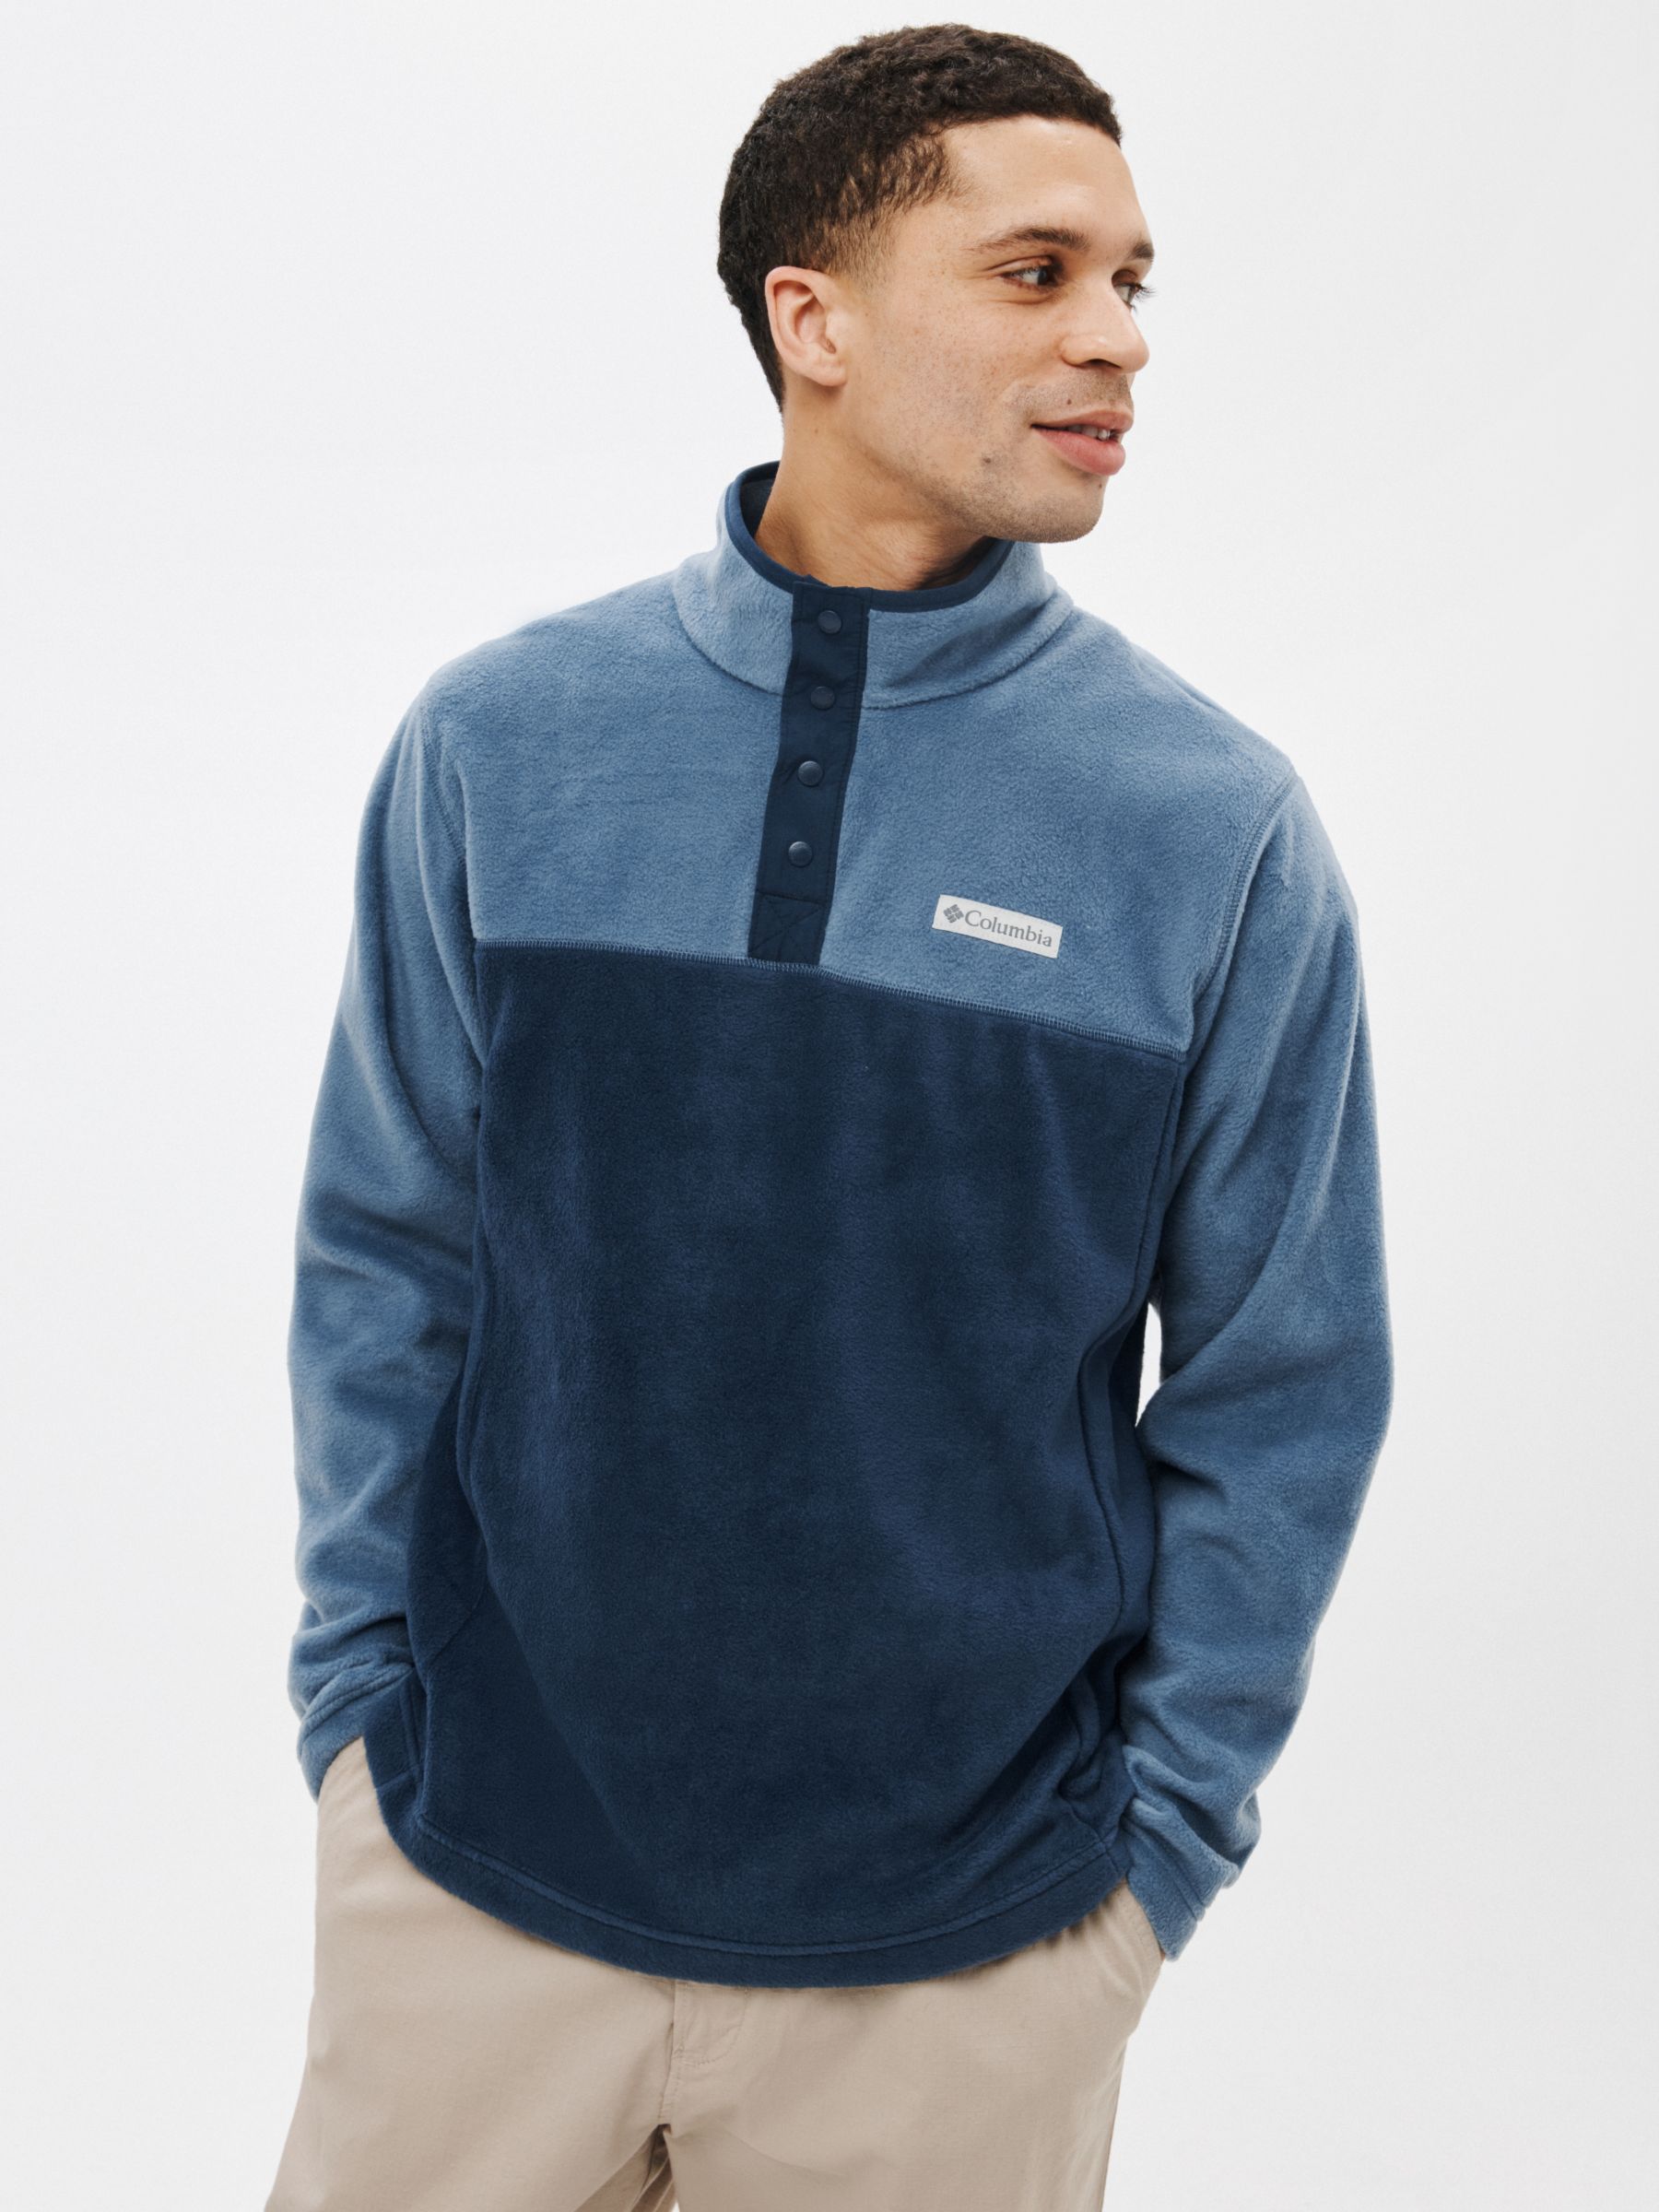 Men's Sweatshirts & Hoodies - Columbia, Blue